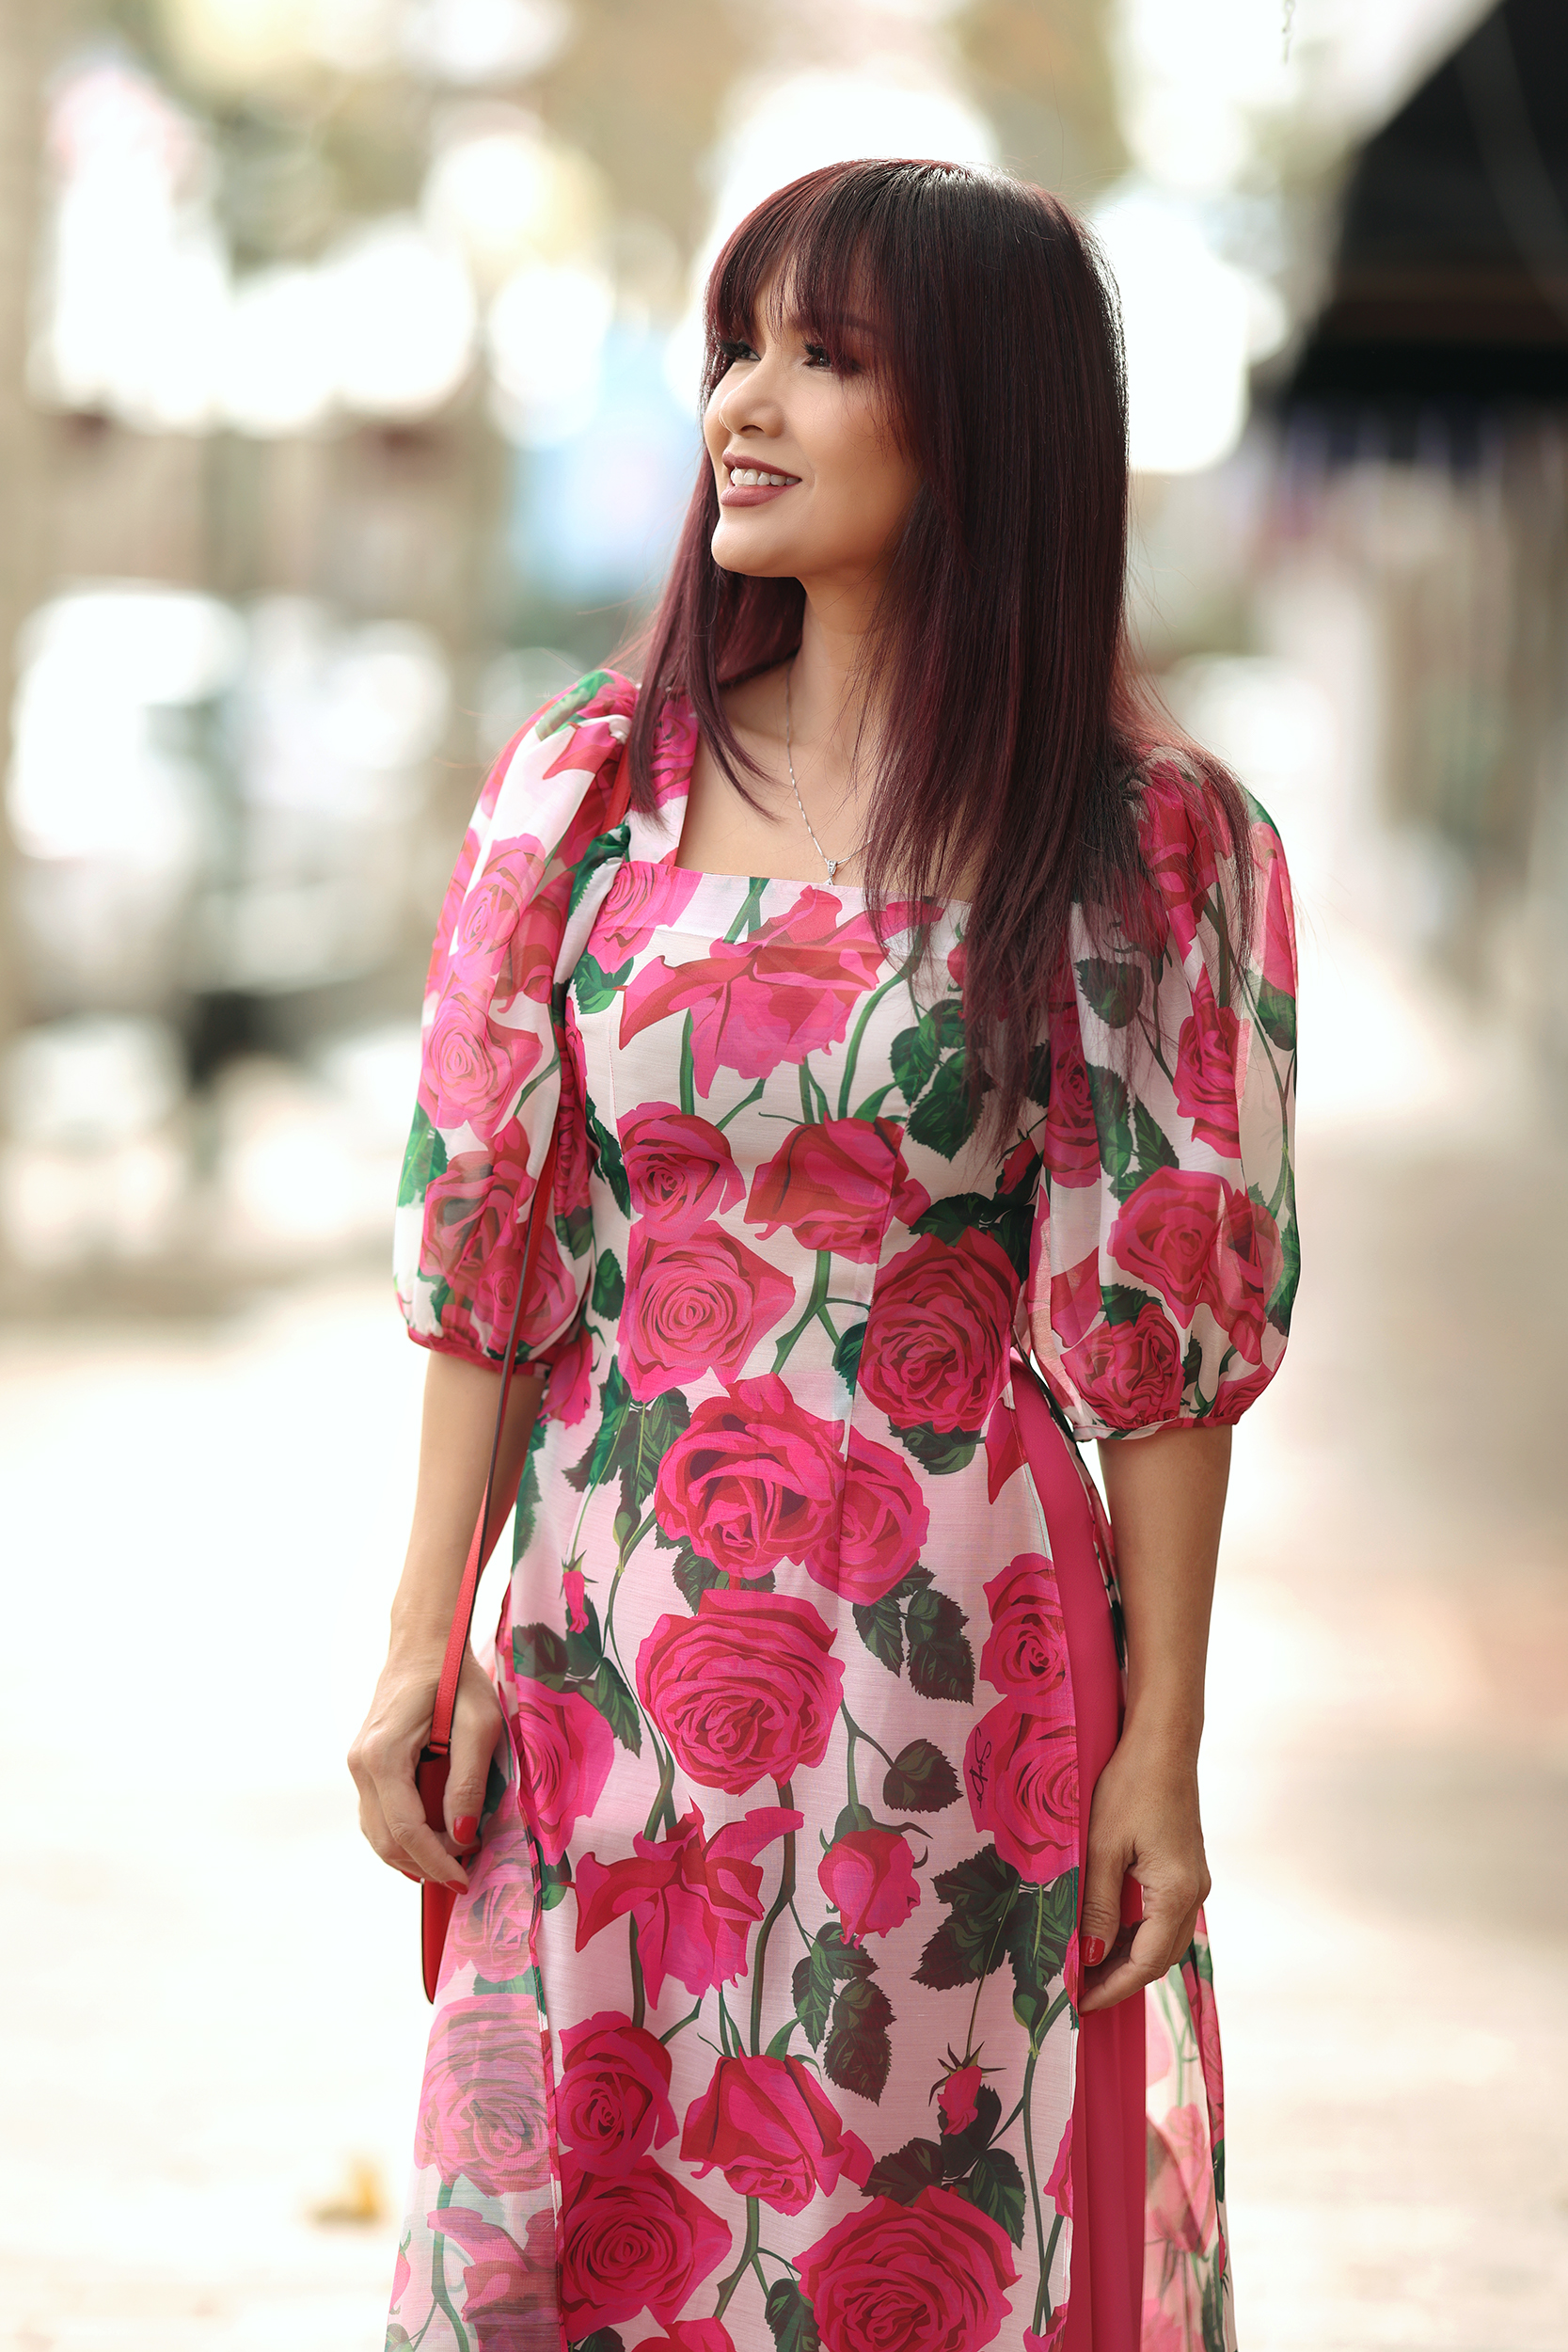 Hoa hậu Ngọc Hân với ý tưởng kết hợp văn hóa Nhật Bản và Việt Nam trong tà áo dài - ảnh 13